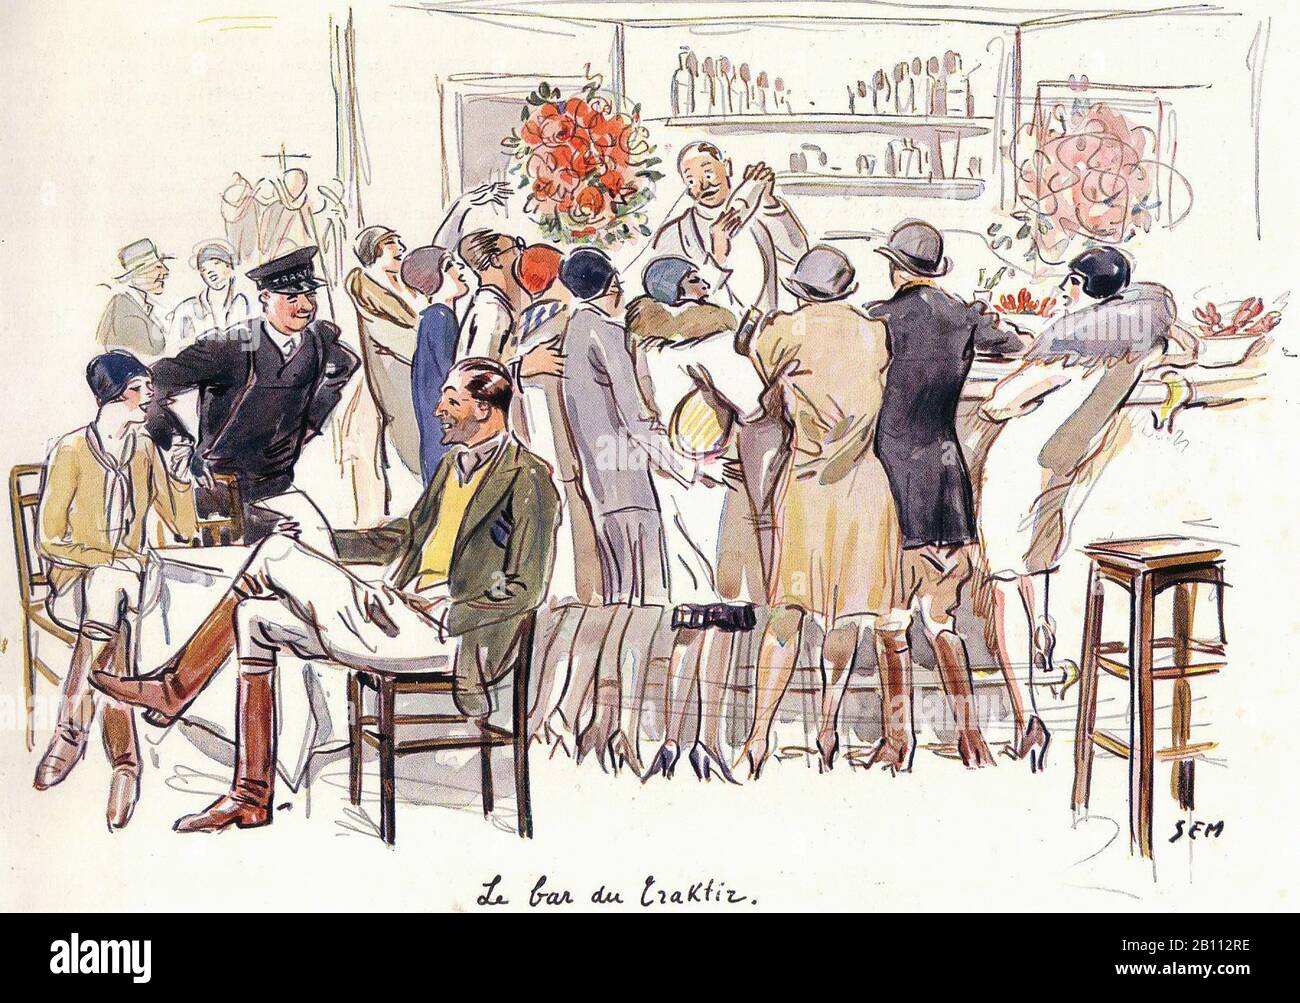 Le bar du Craktiz - Illustration de SEM (Georges Goursat 1863–1934) Banque D'Images